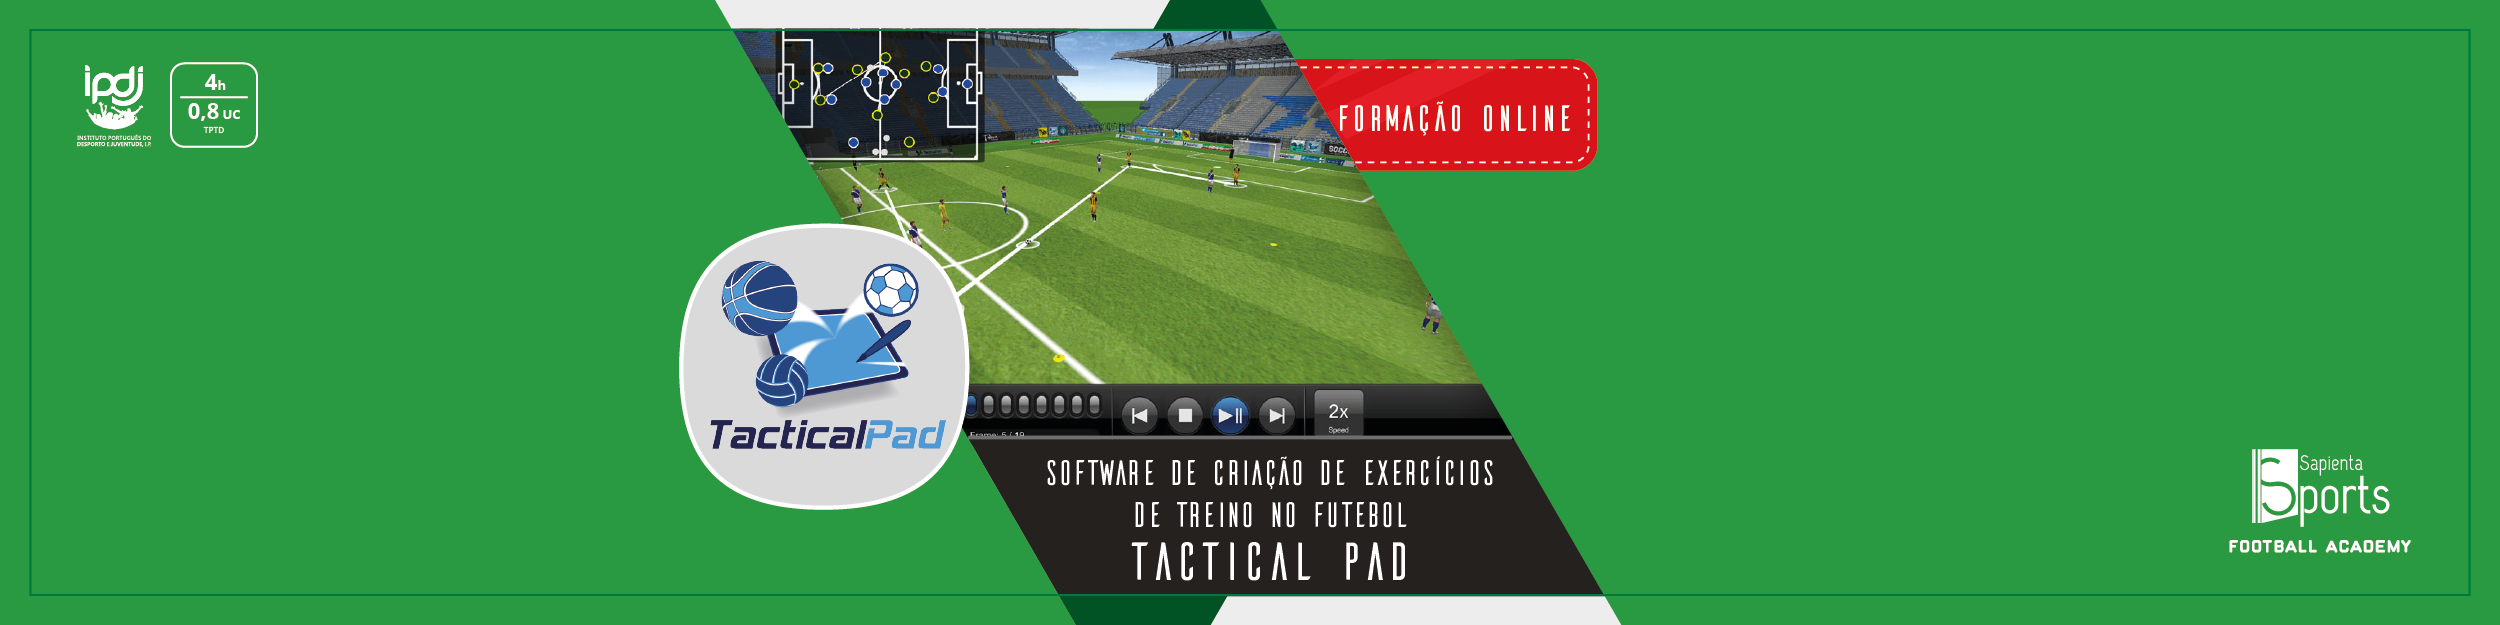 Software de Criação de Exercícios de Treino no Futebol – TACTICAL PAD